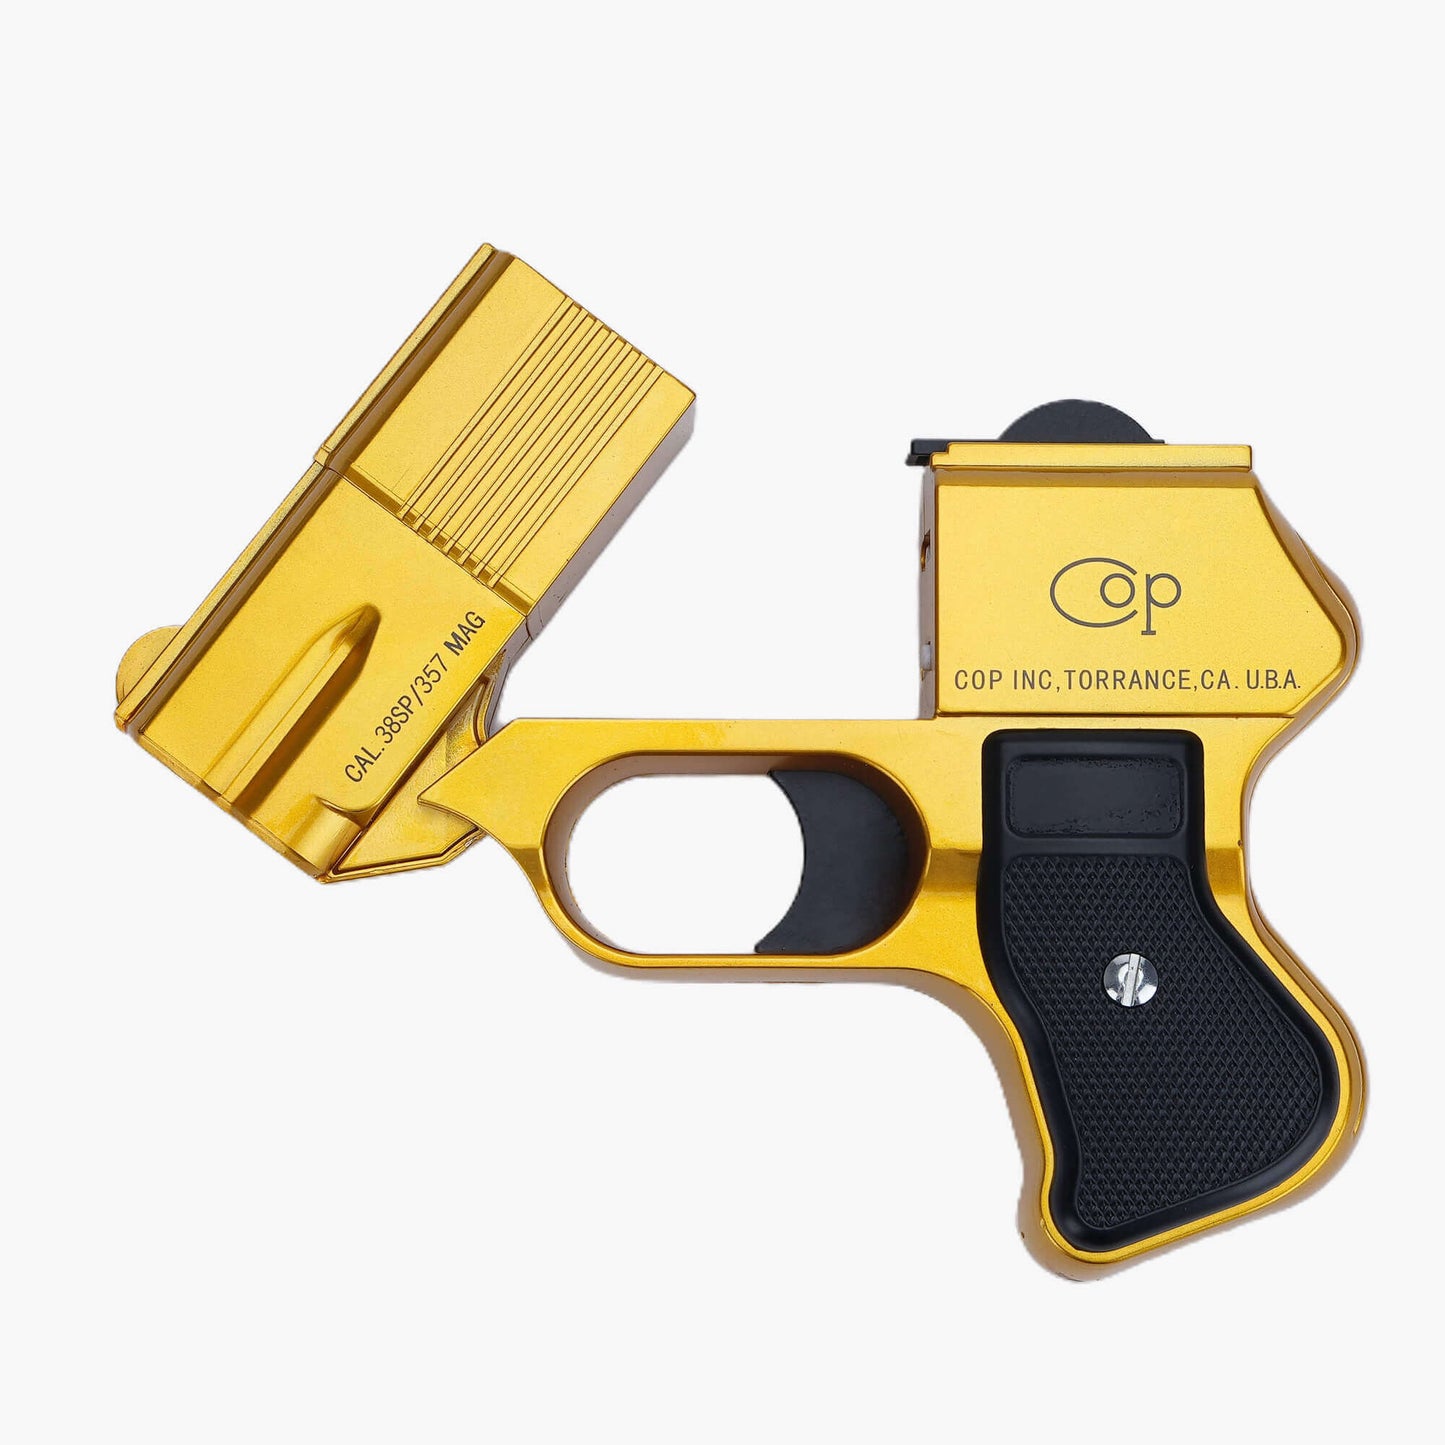 Marushin COP 357 Toy Gun